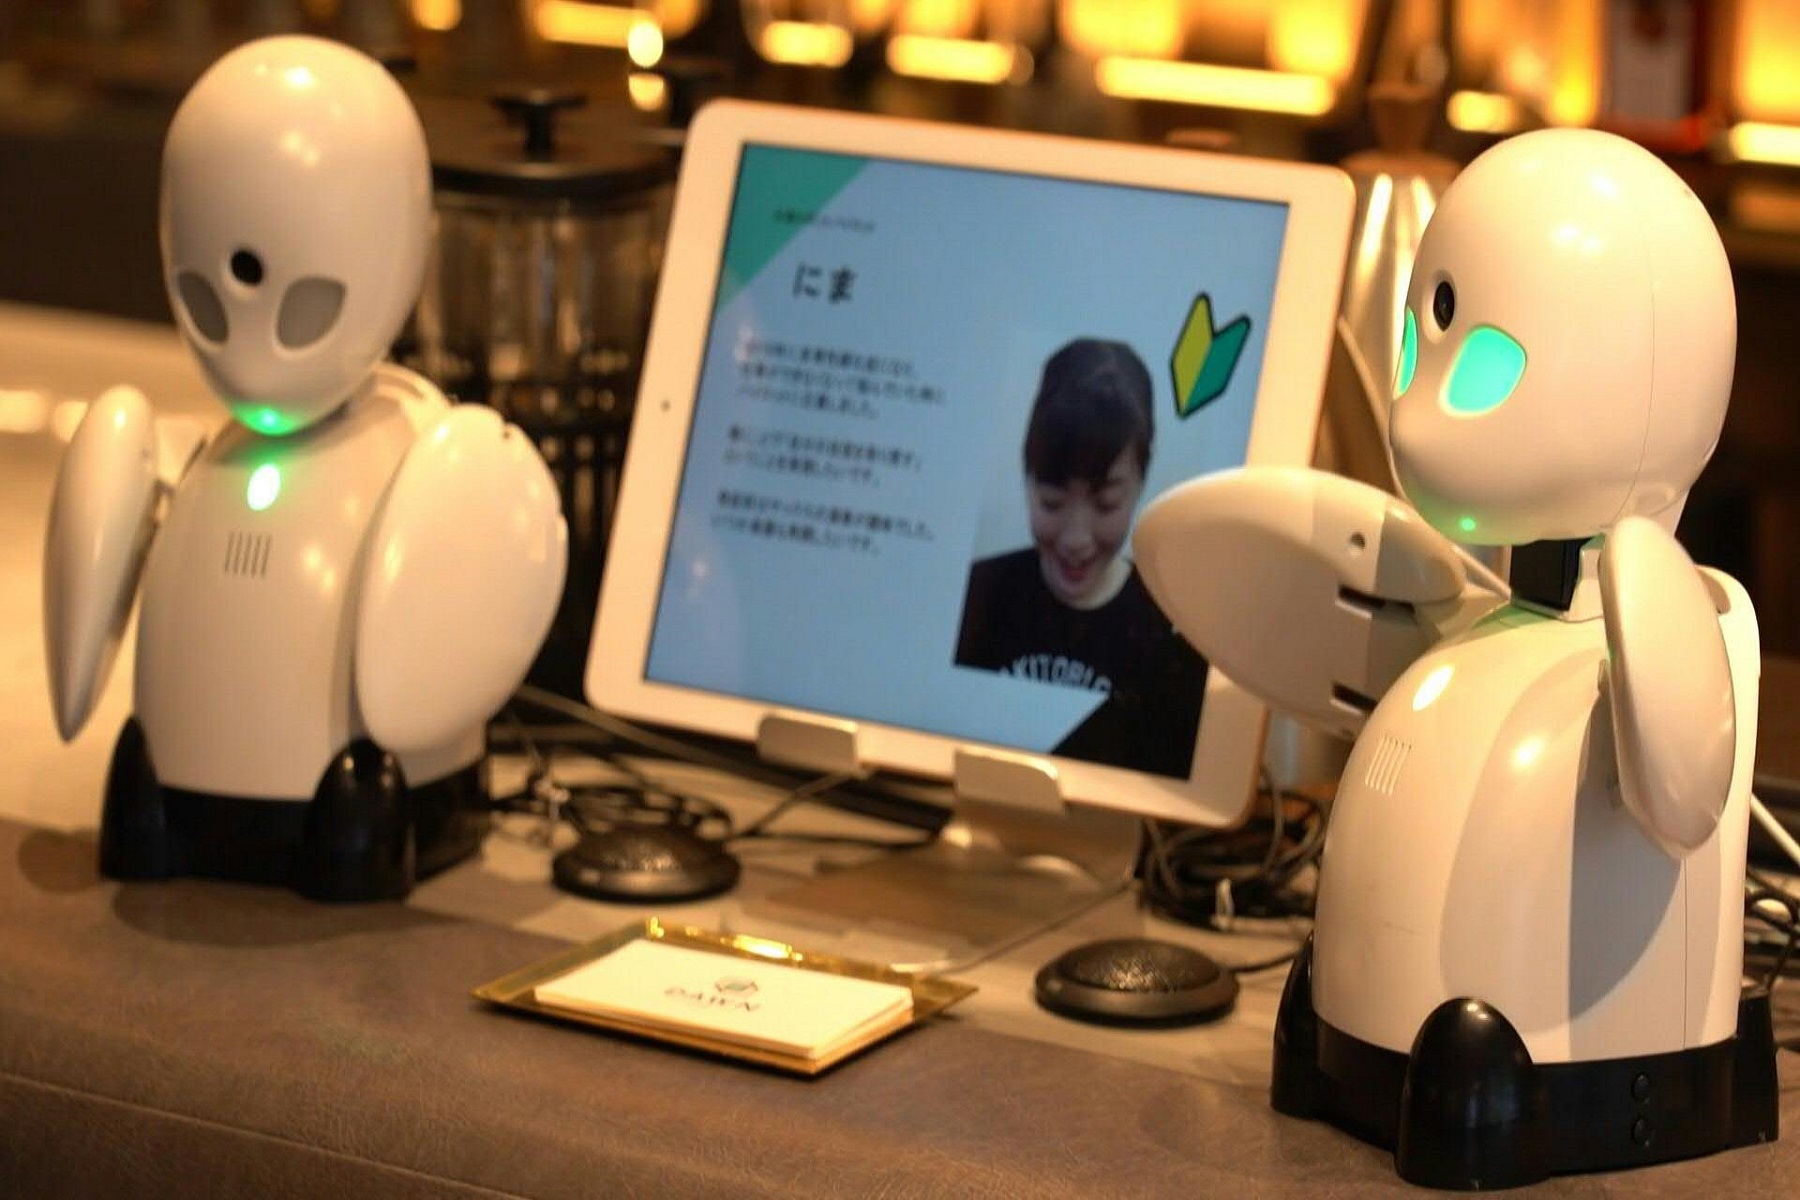 Ρομπότ καφέ Τόκιο: Προσφέρει νέα προοπτική για την ένταξη ατόμων με αναπηρία